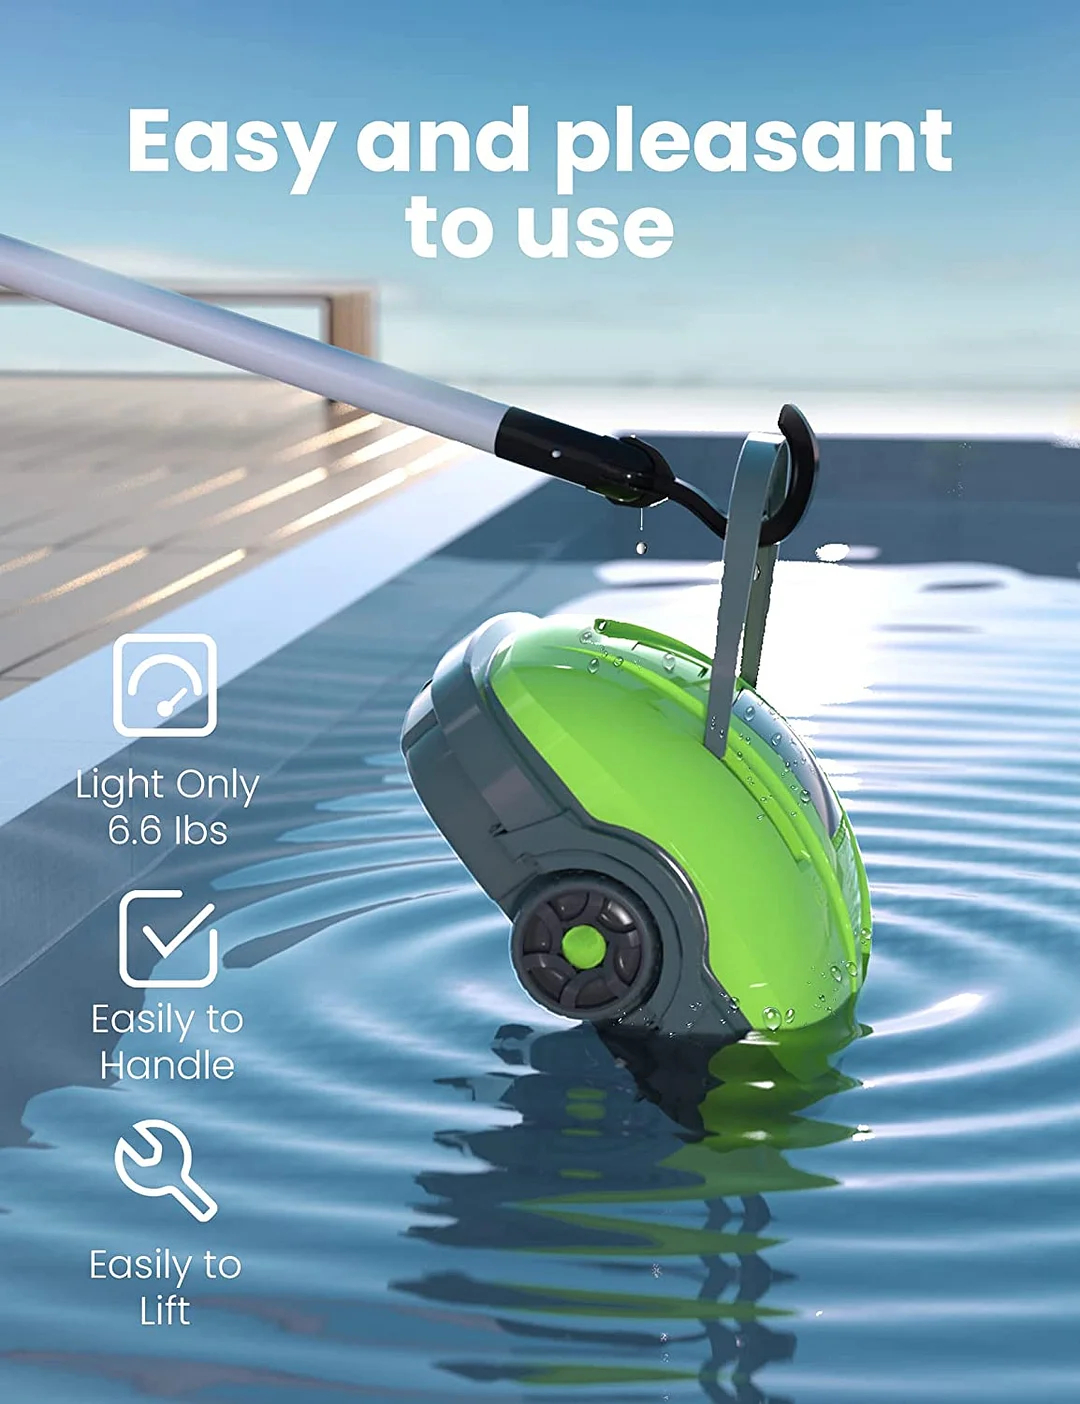 Cordless Robotic Pool Cleaner - IPX8 Waterproof, Dual-Motor